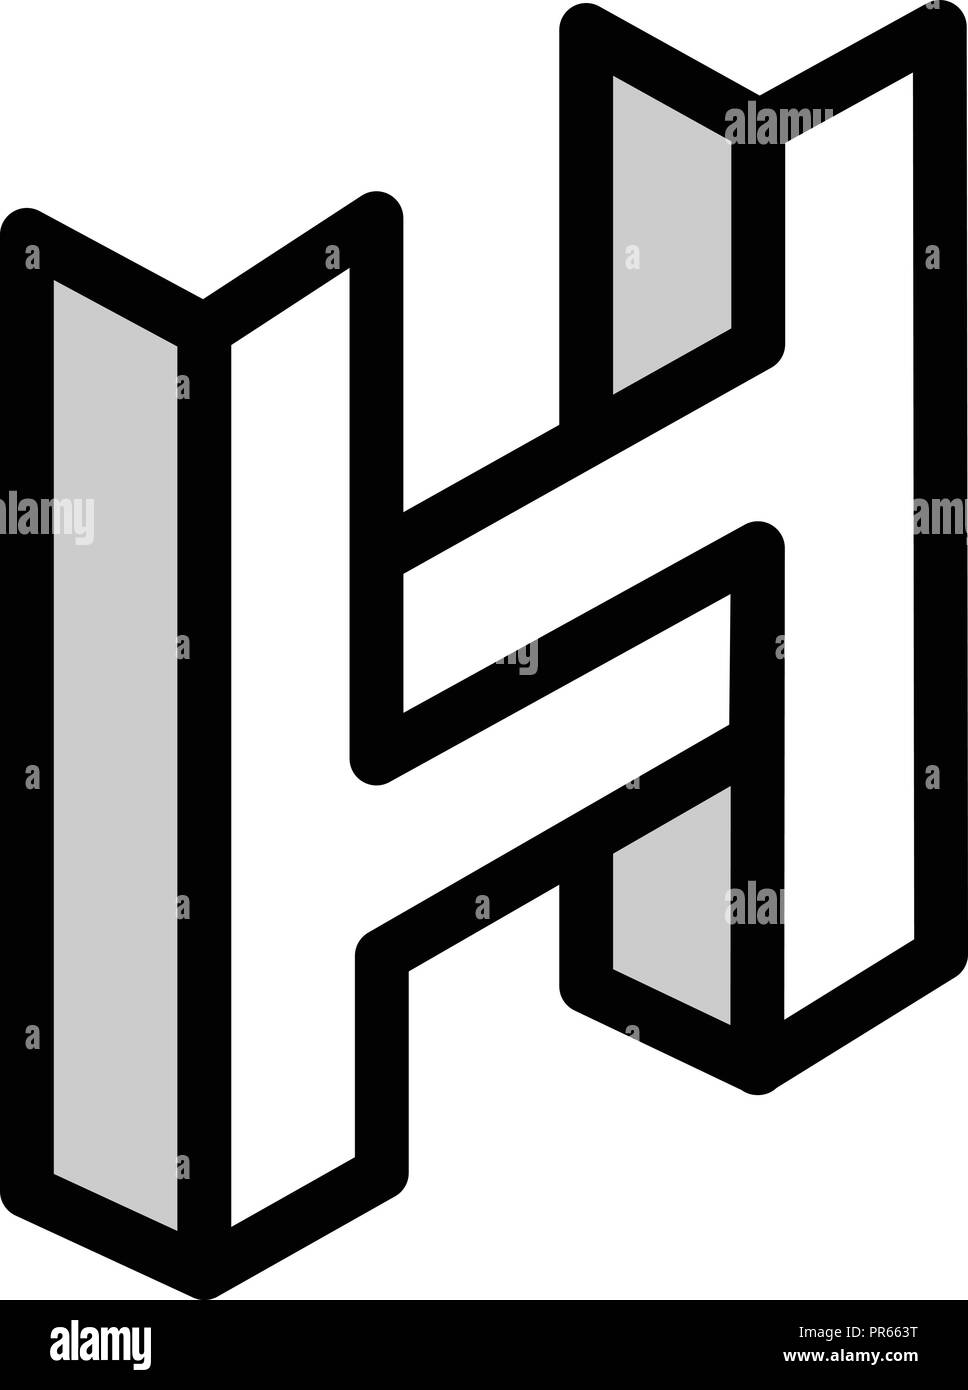 Lettre H construction logo, des icônes pour les entreprises de construction avec les initiales du logo lettre H, H lettre logo concept isométrique Illustration de Vecteur